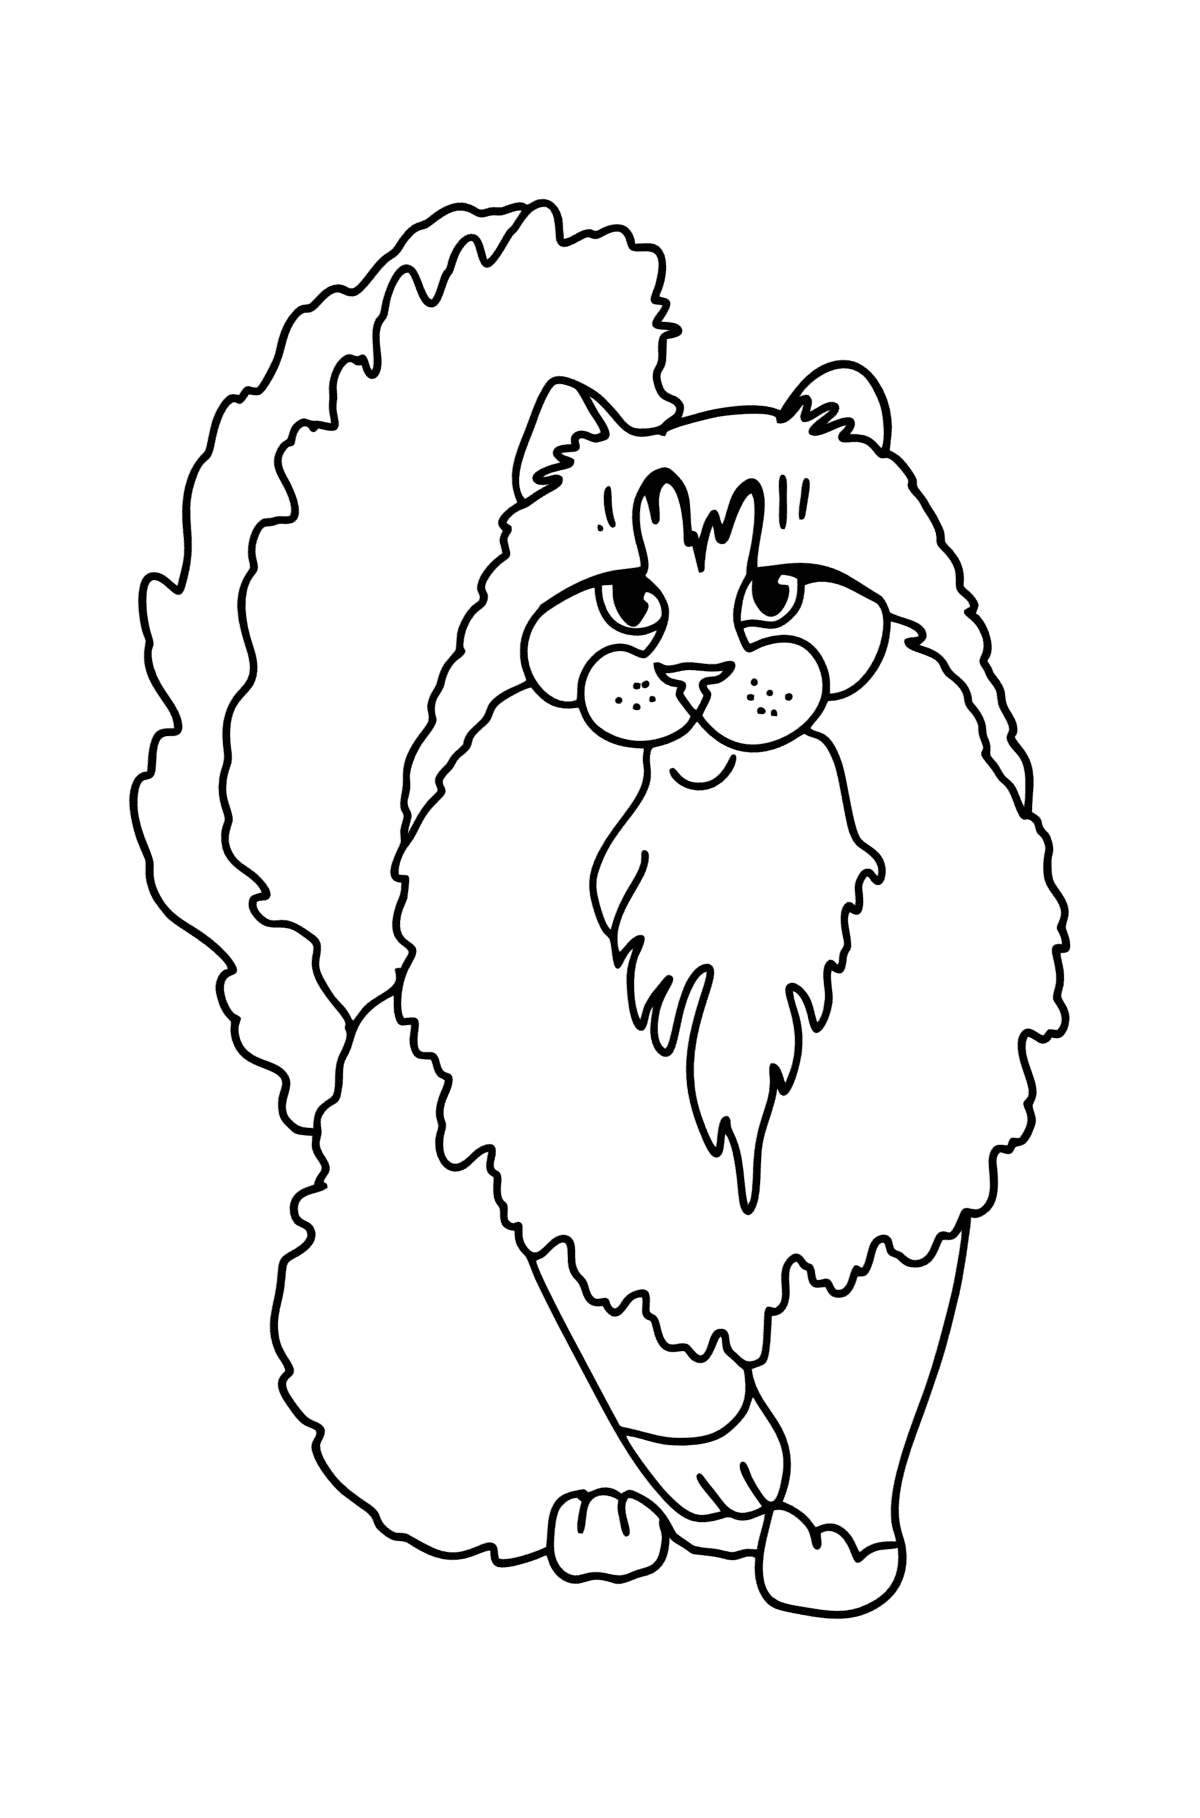 Раскраска Норвежская Лесная кошка - Картинки для Детей